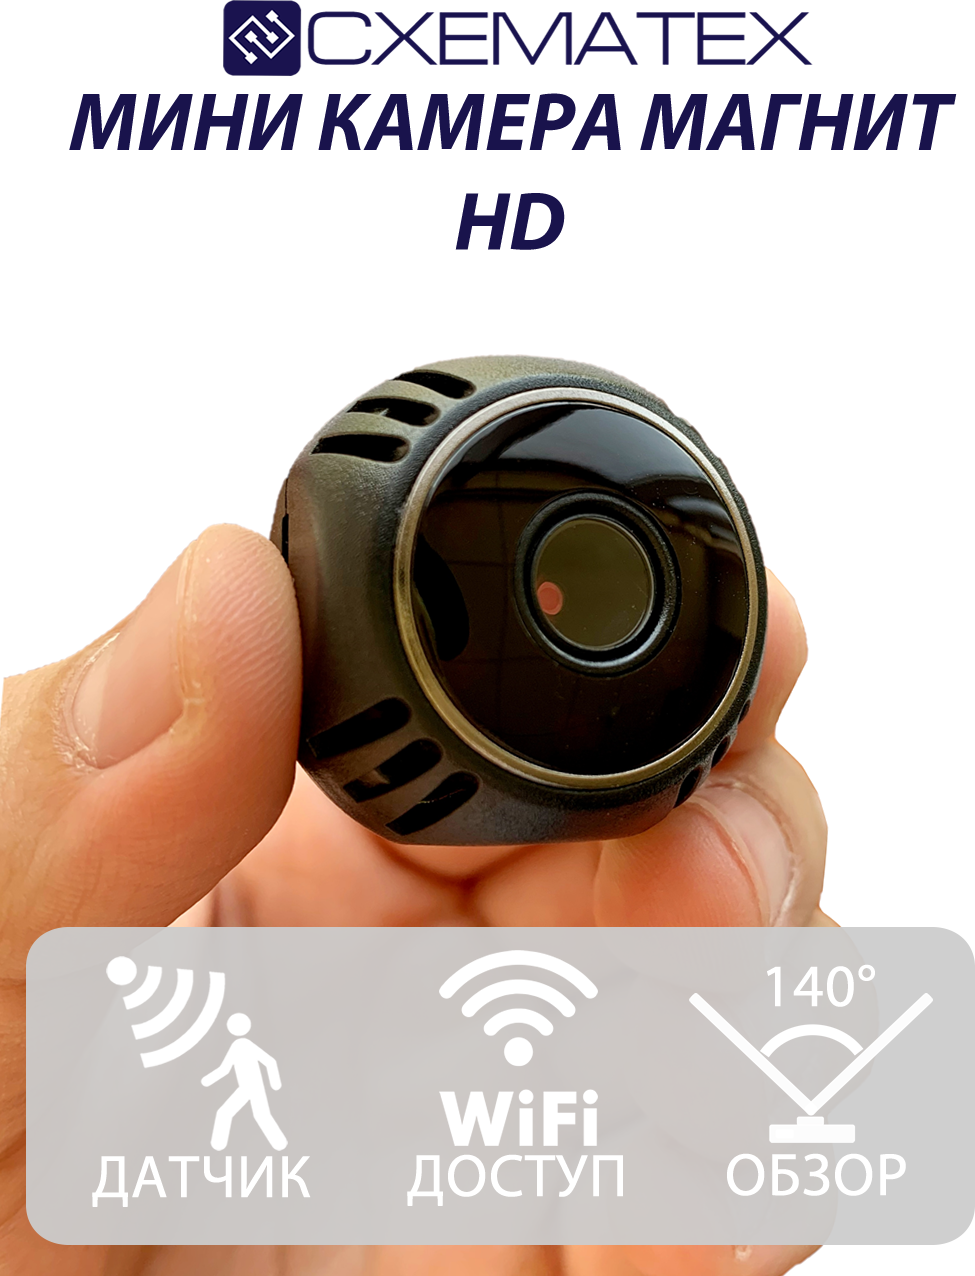 Самая Маленькая Беспроводная Камера Магнит W8 / Камера Wi-Fi — купить в интернет-магазине по низкой цене на Яндекс Маркете